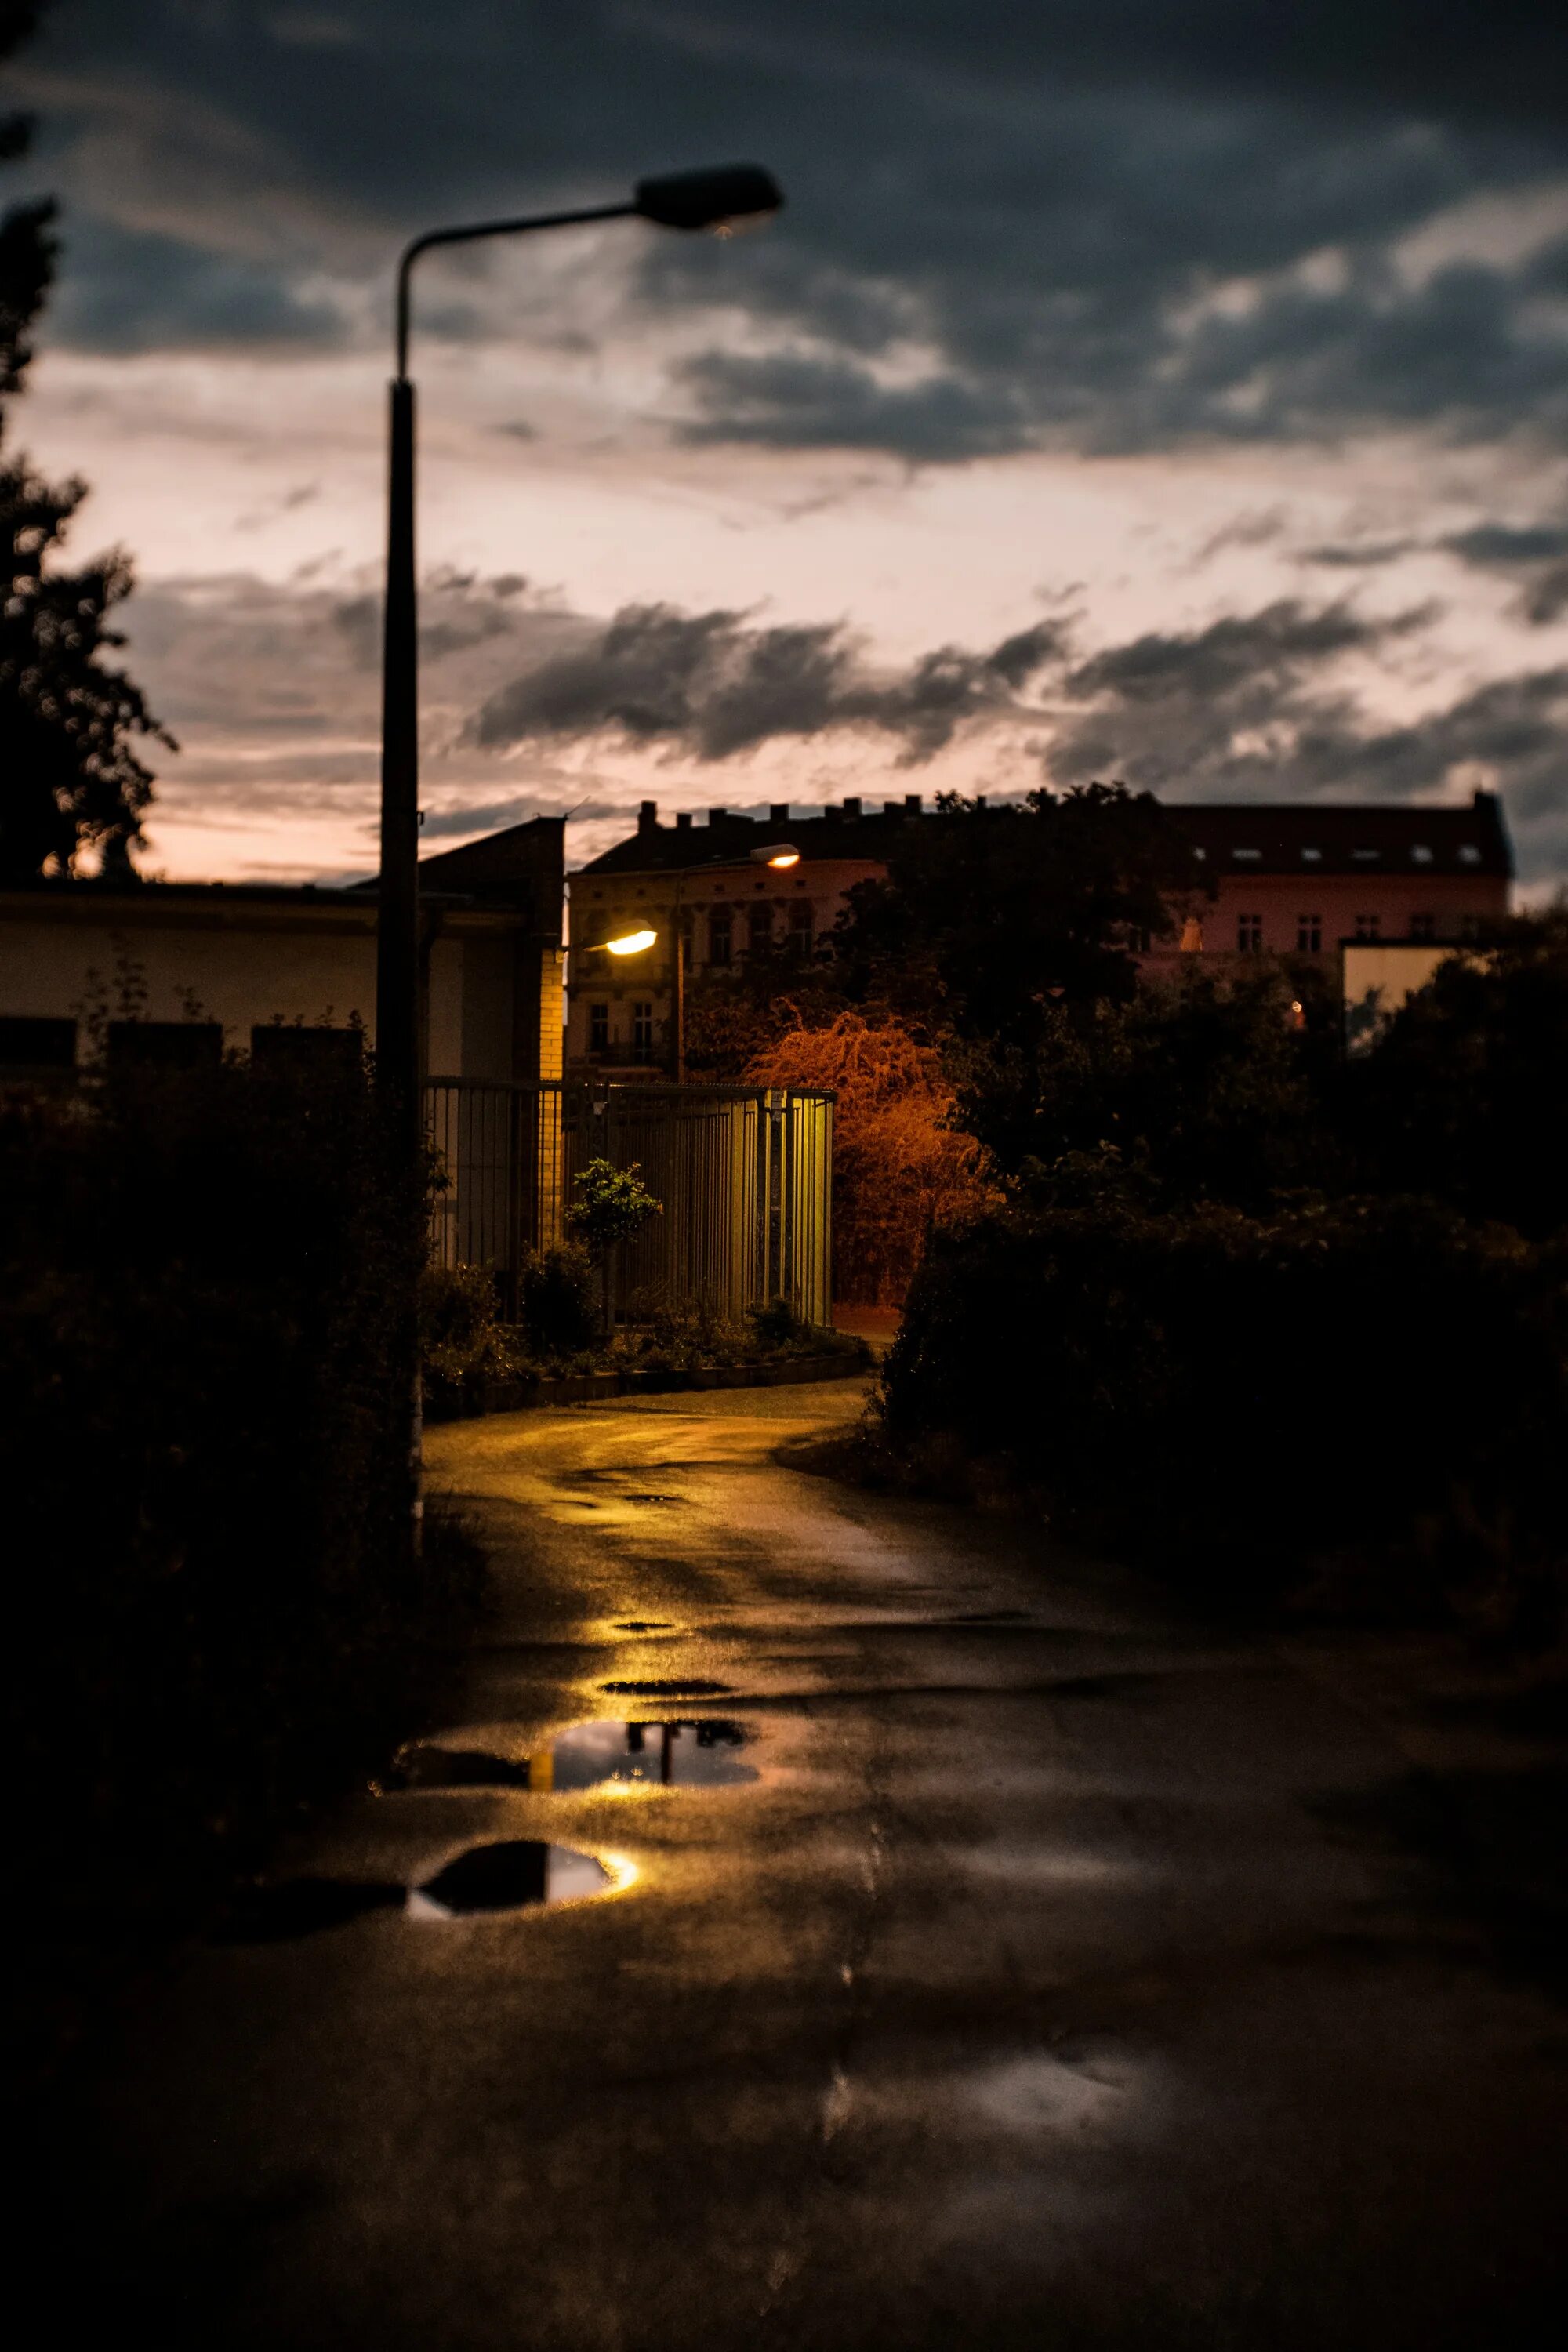 Фото на улице на телефон. Ночная улица. Темно на улице. Дорога с фонарями ночью. Темная улица.